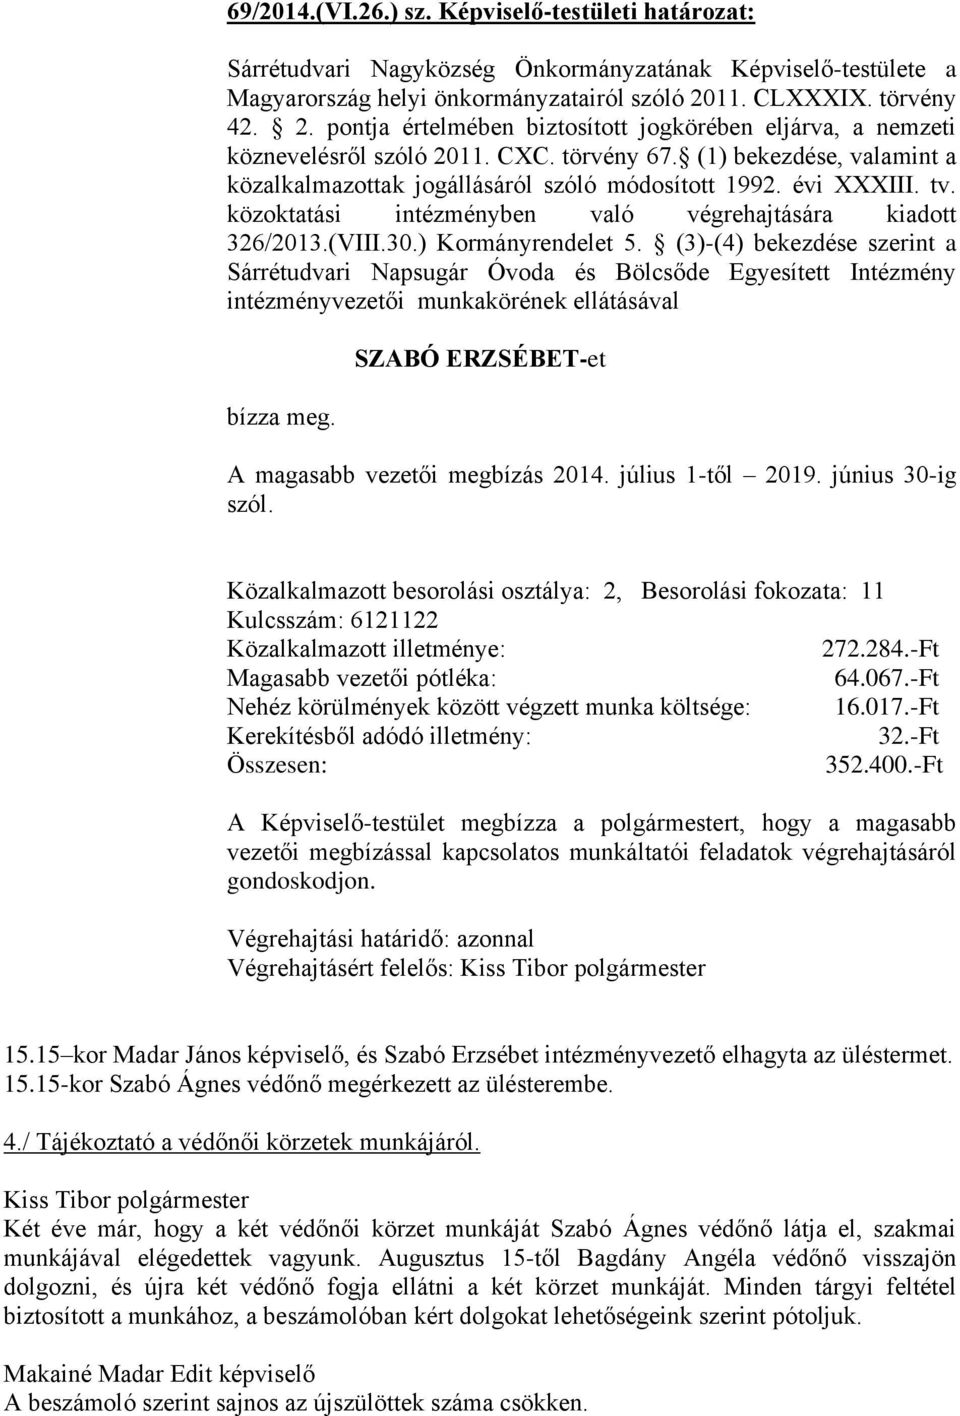 ) Kormányrendelet 5. (3)-(4) bekezdése szerint a Sárrétudvari Napsugár Óvoda és Bölcsőde Egyesített Intézmény intézményvezetői munkakörének ellátásával bízza meg.